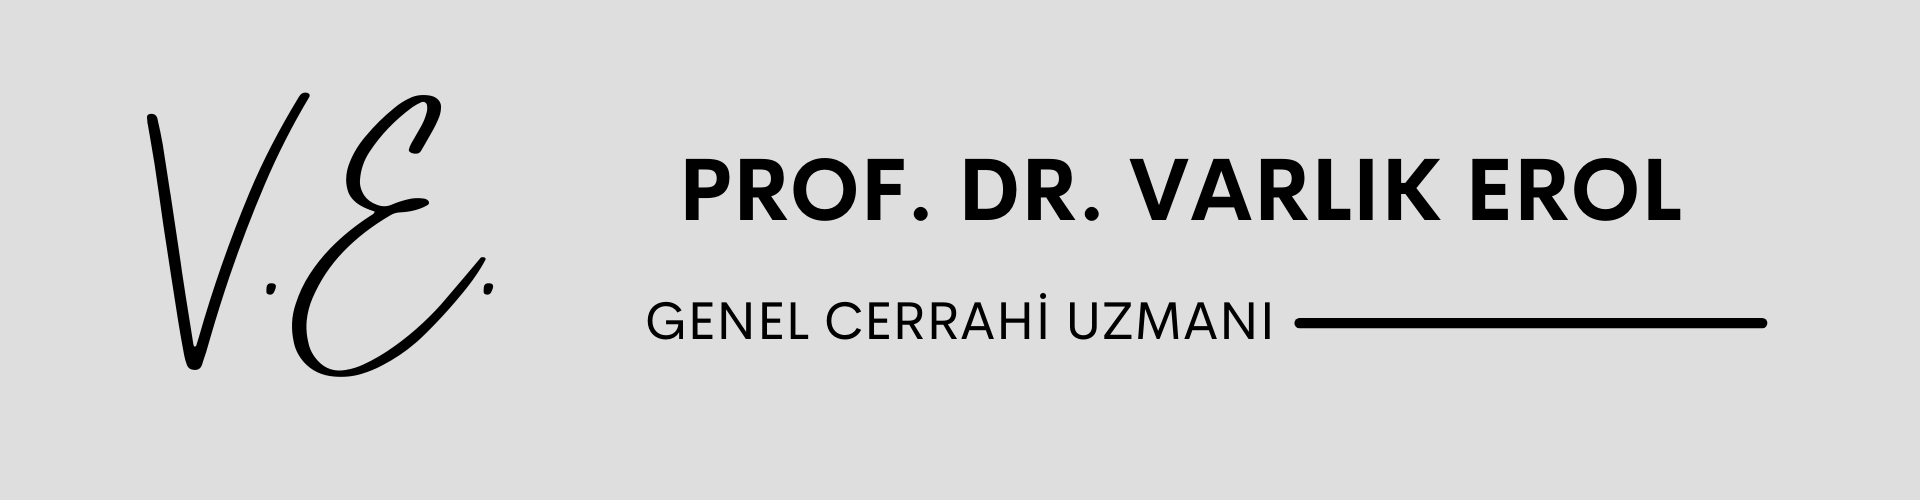 Prof. Dr.
Varlık Erol